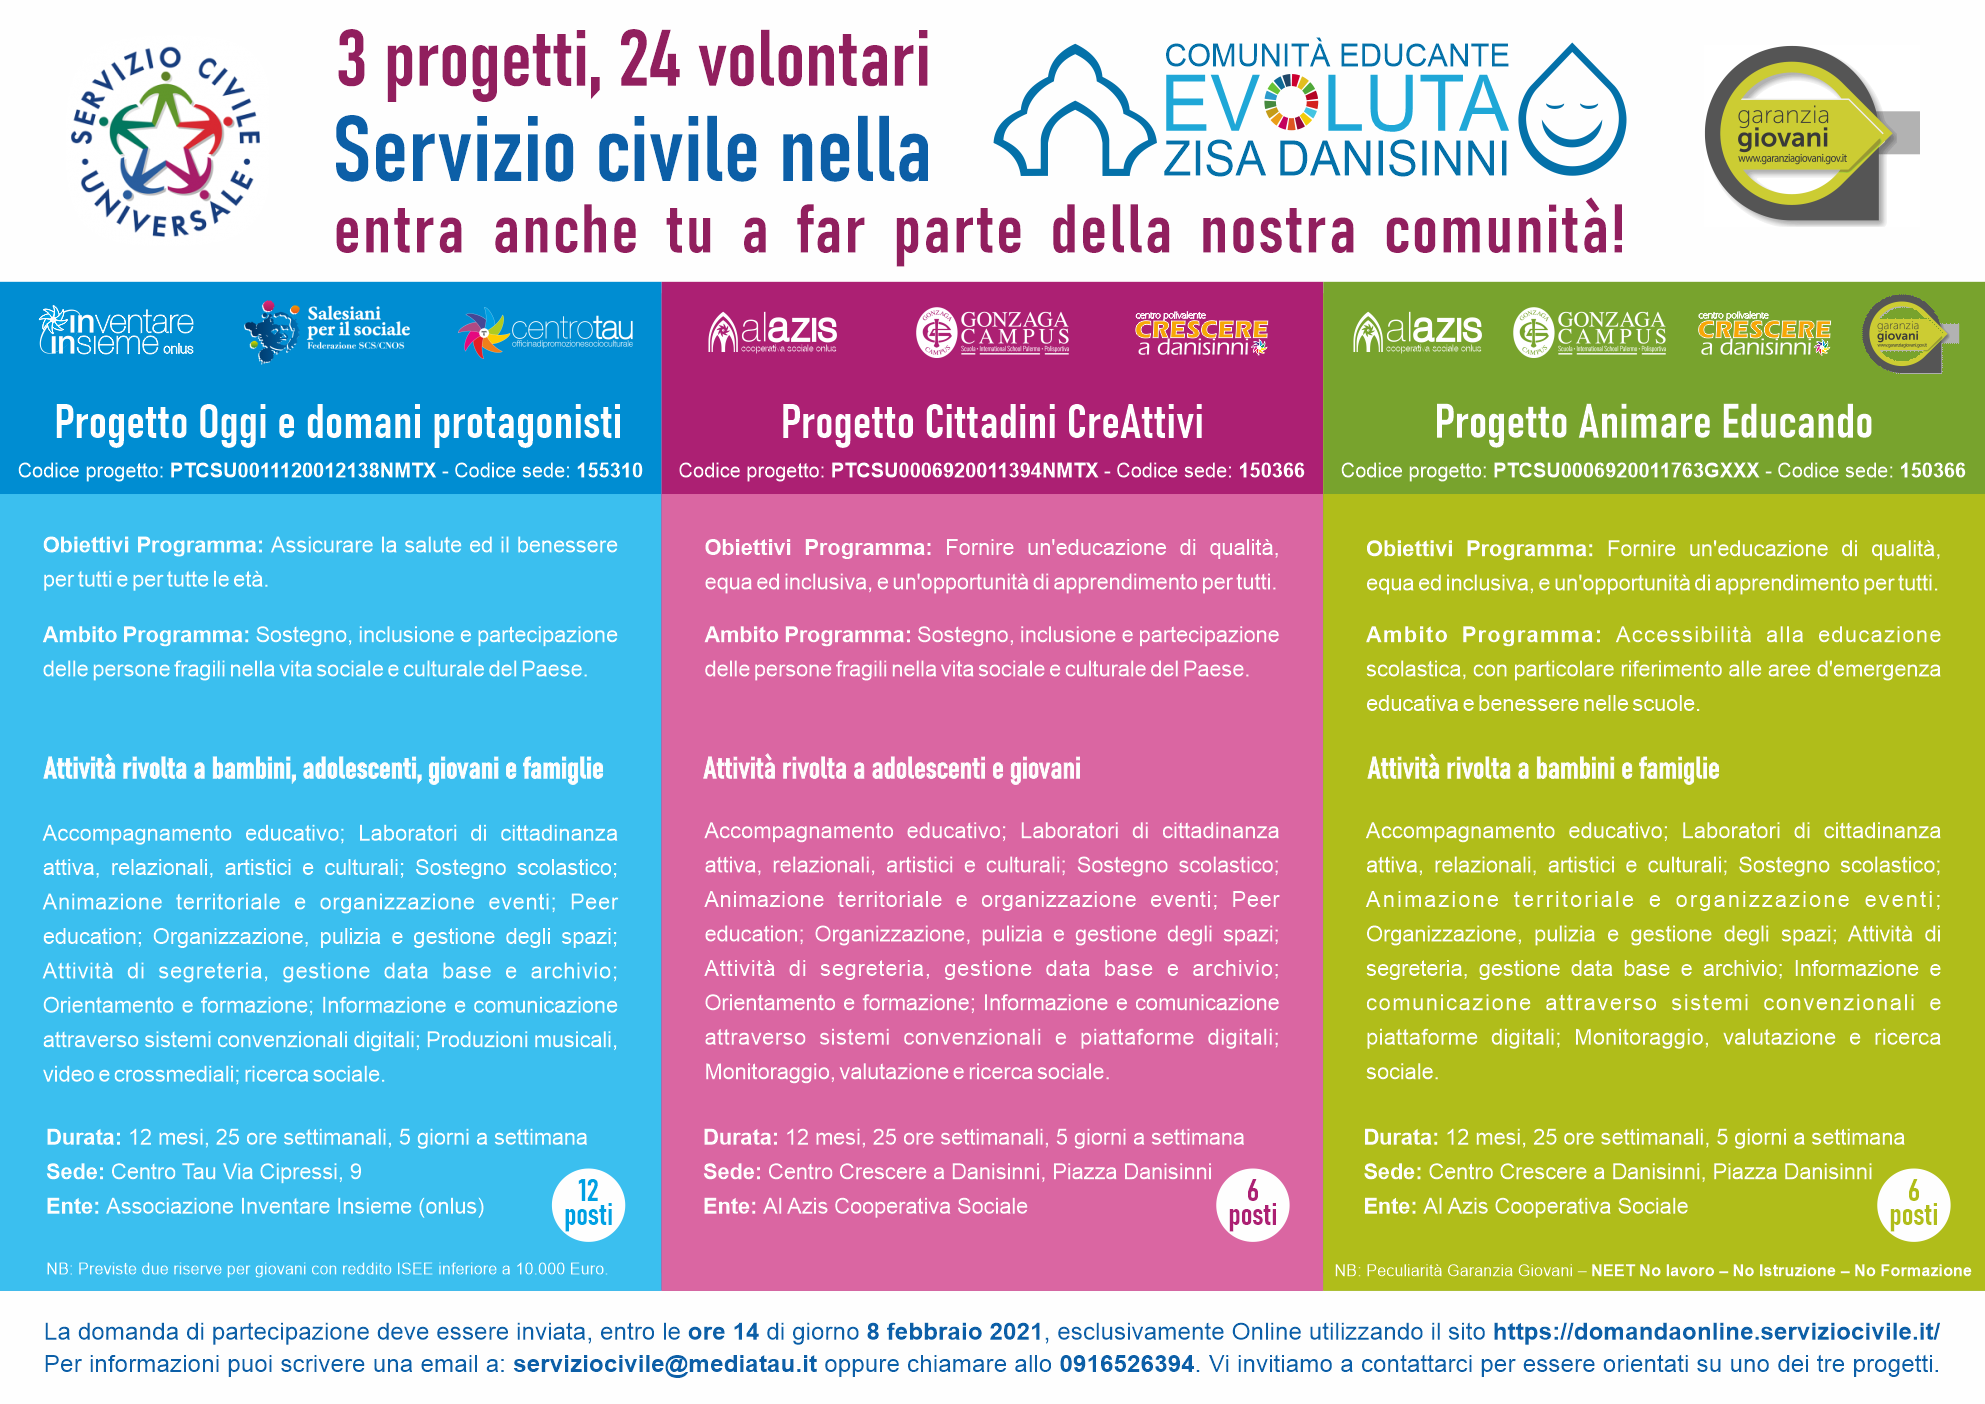 Tre progetti del Servizio Civile per la Comunità Educante Evoluta Zisa Danisinni